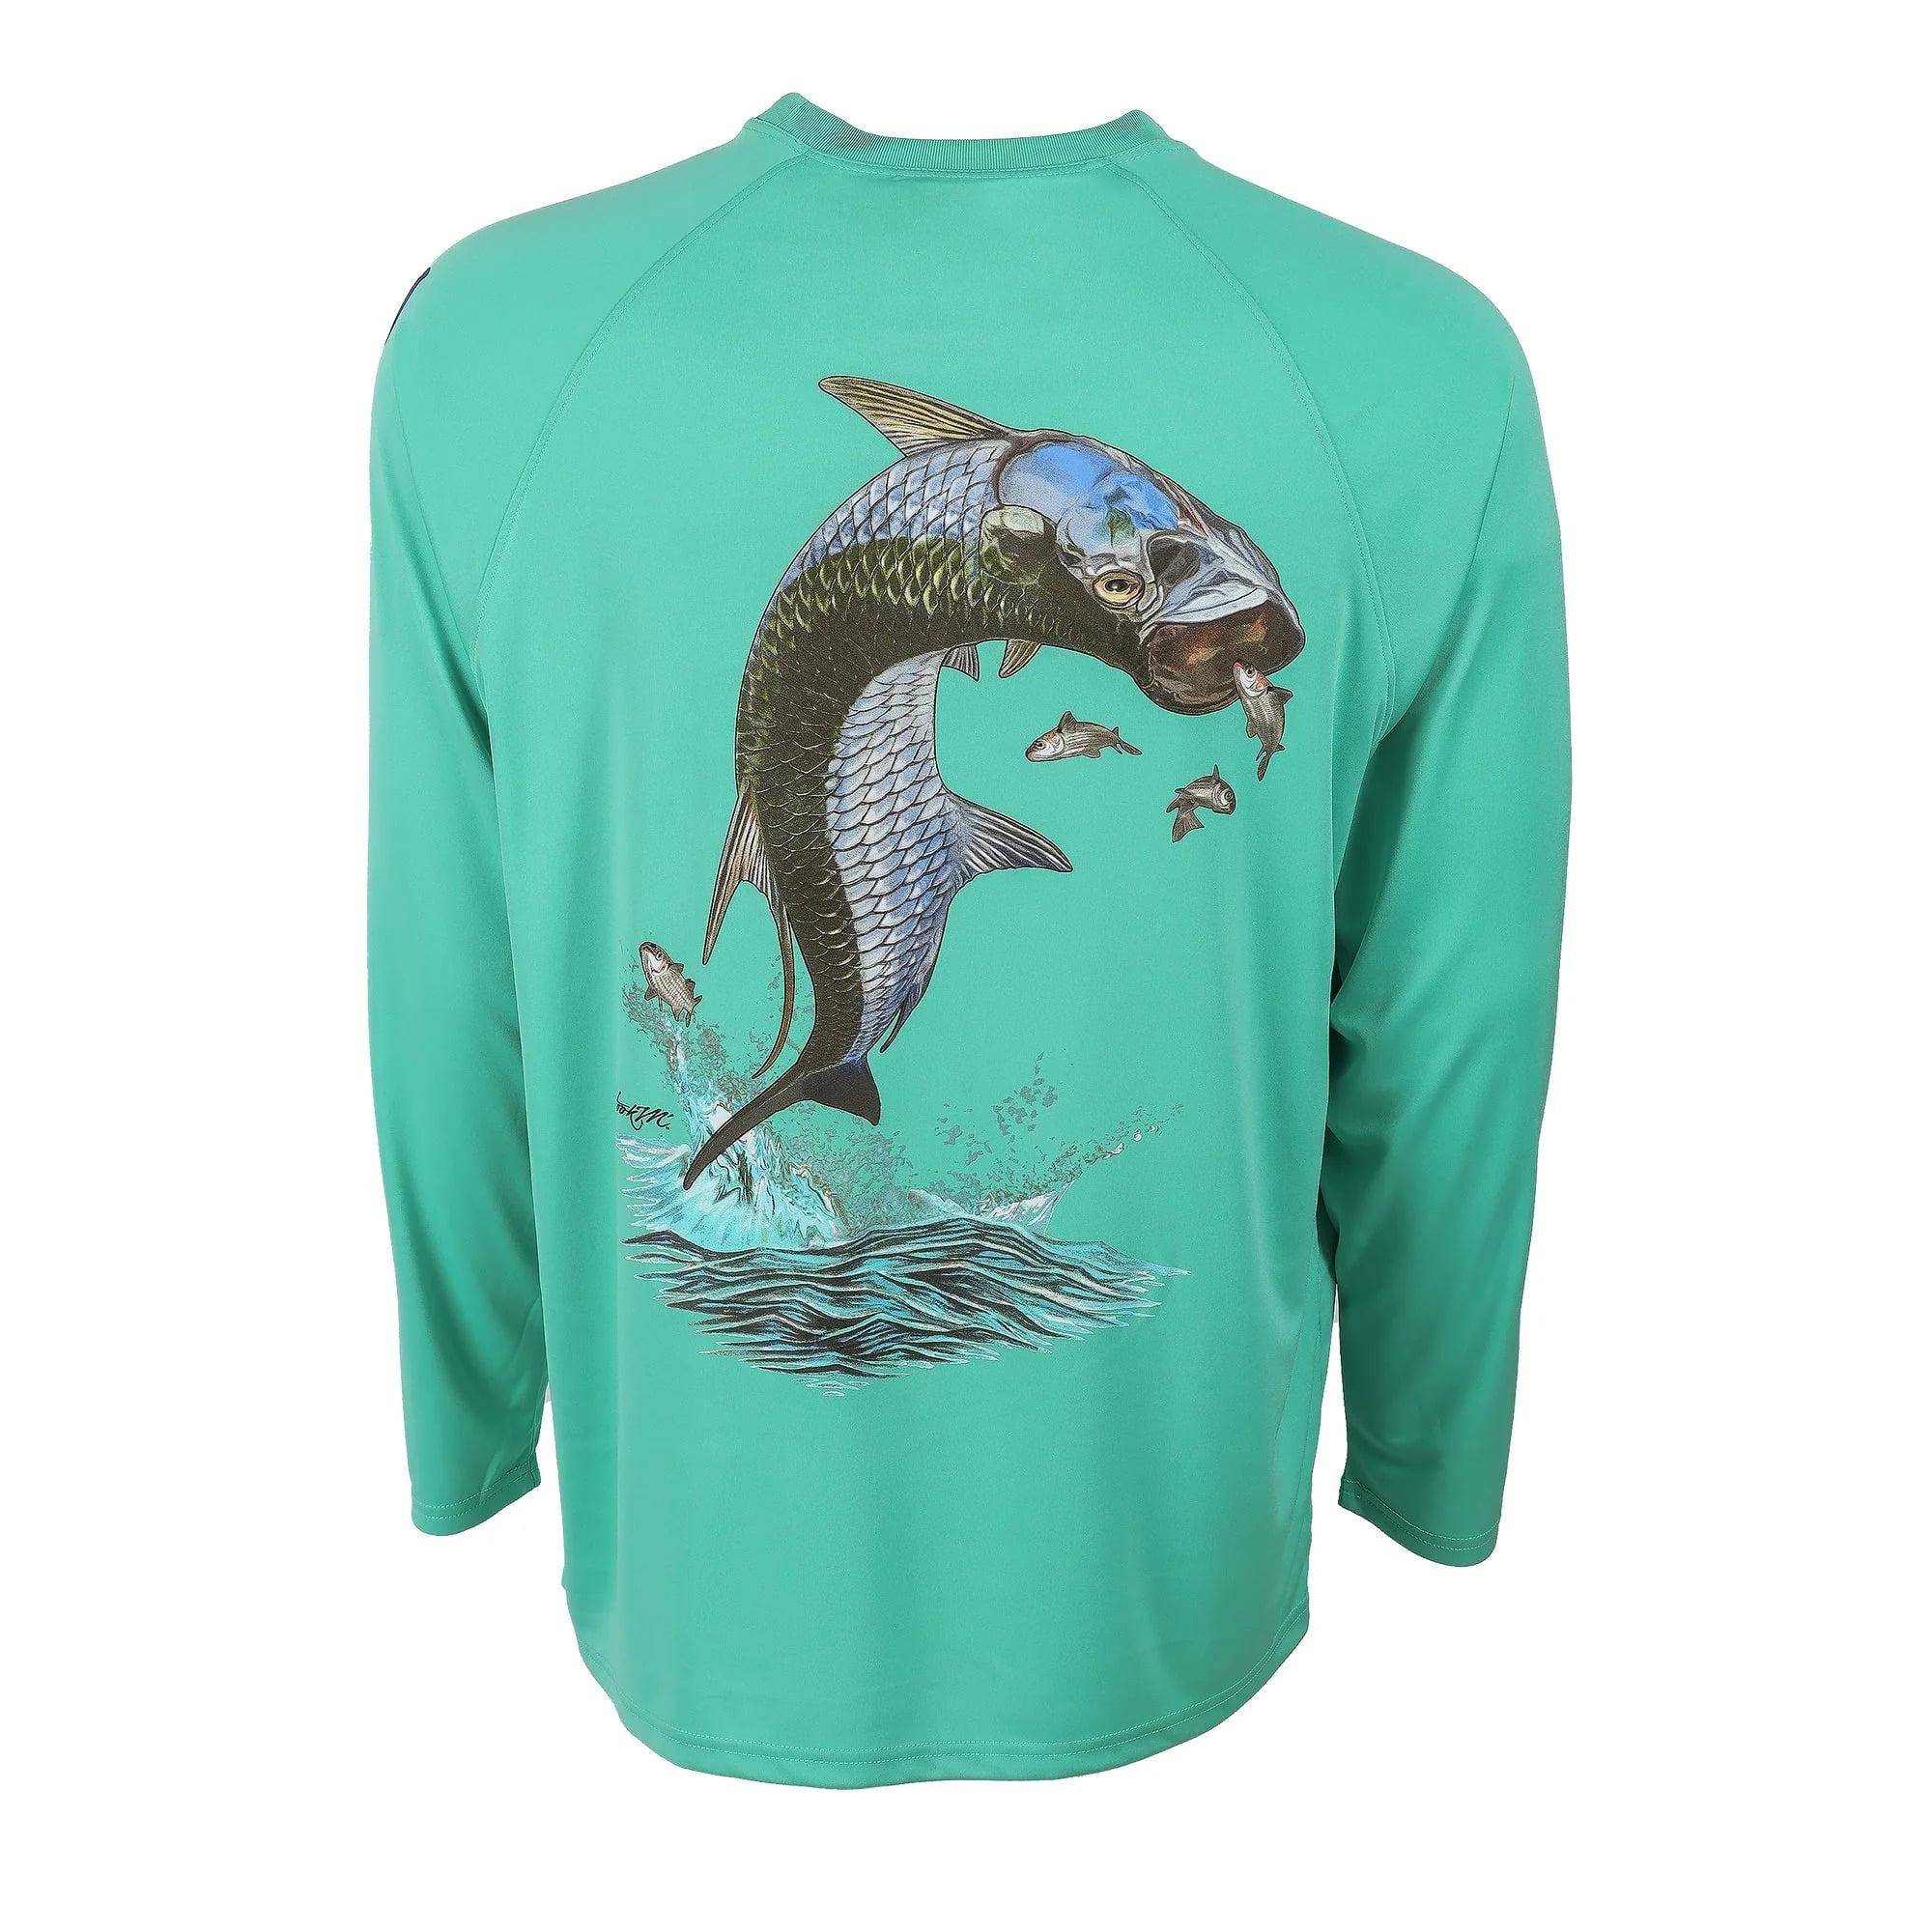 Bimini Bay Outfitters Hook M' Men's Long Sleeve Shirt - Tarpon 2 Aquatic 